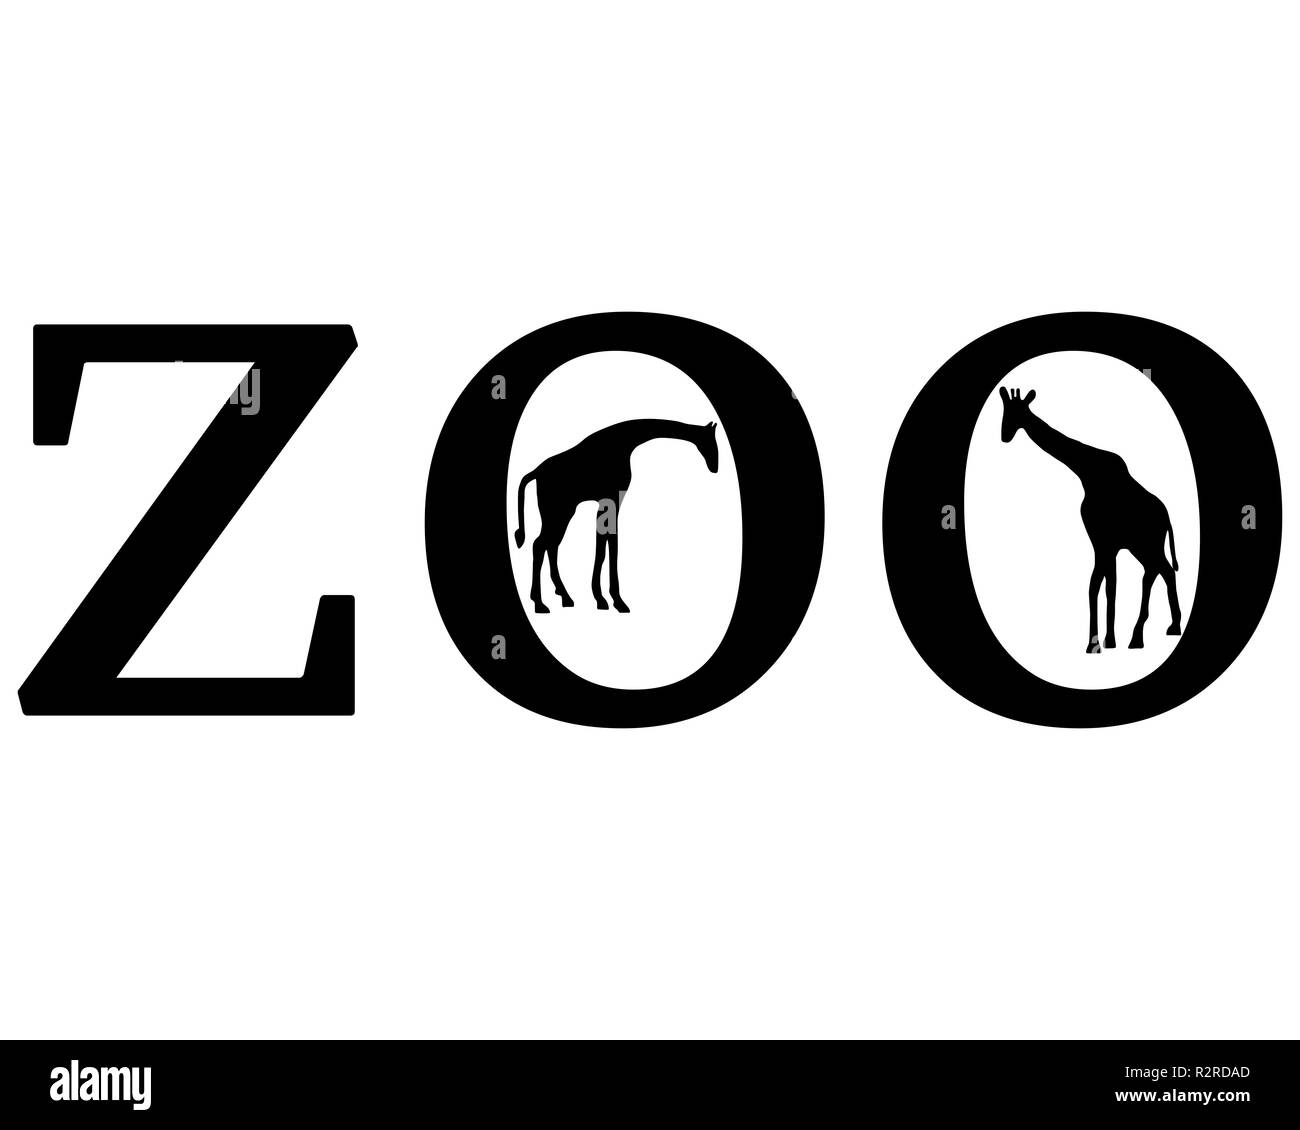 zoo animals Stock Photo